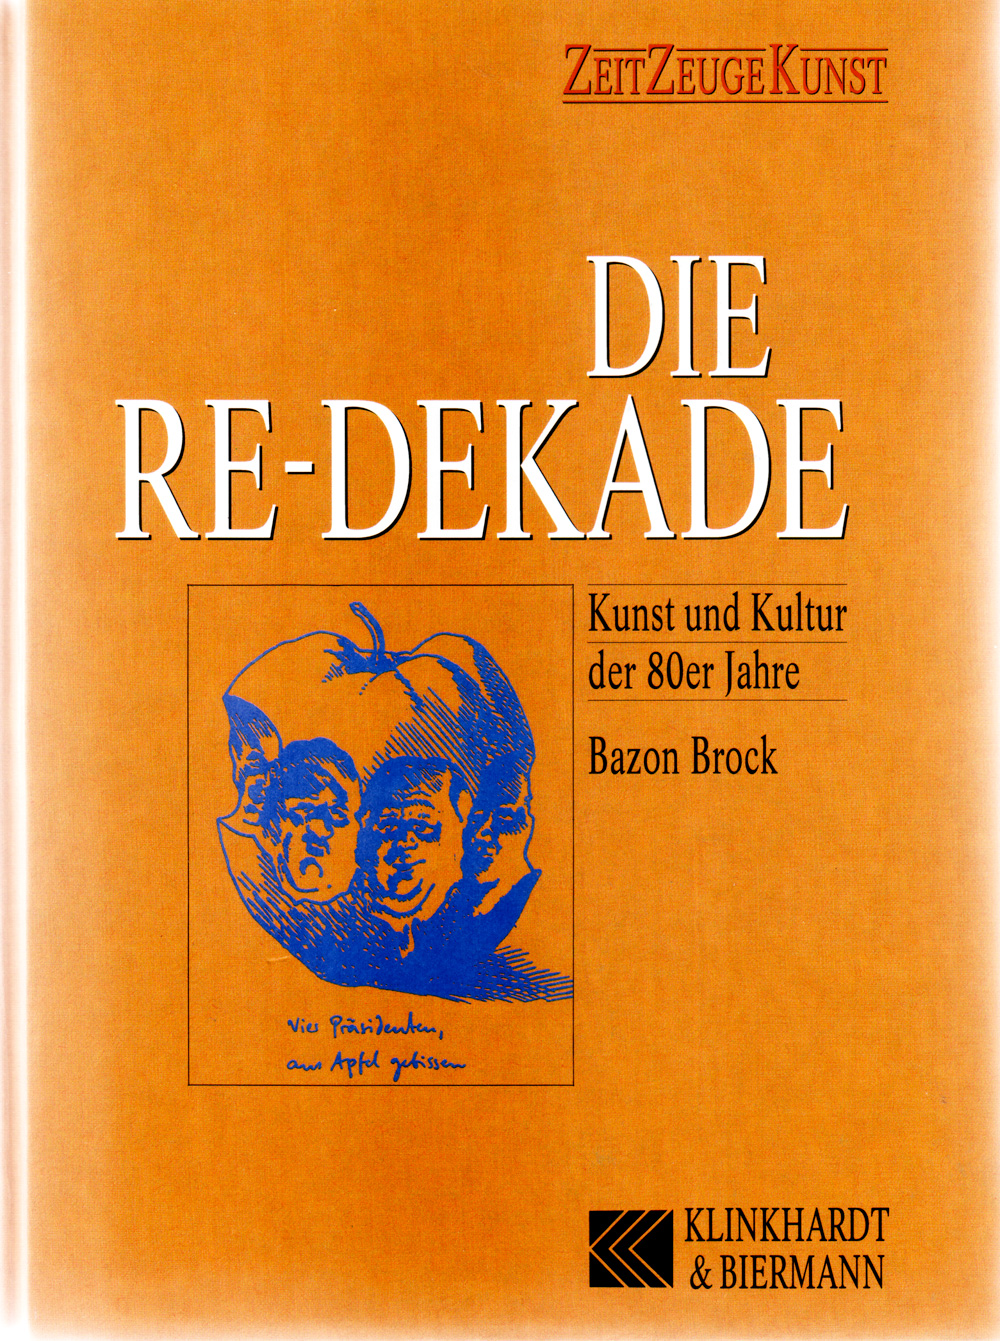 Die Re-Dekade – Kunst und Kultur der 80er Jahre, Bild: Titel.